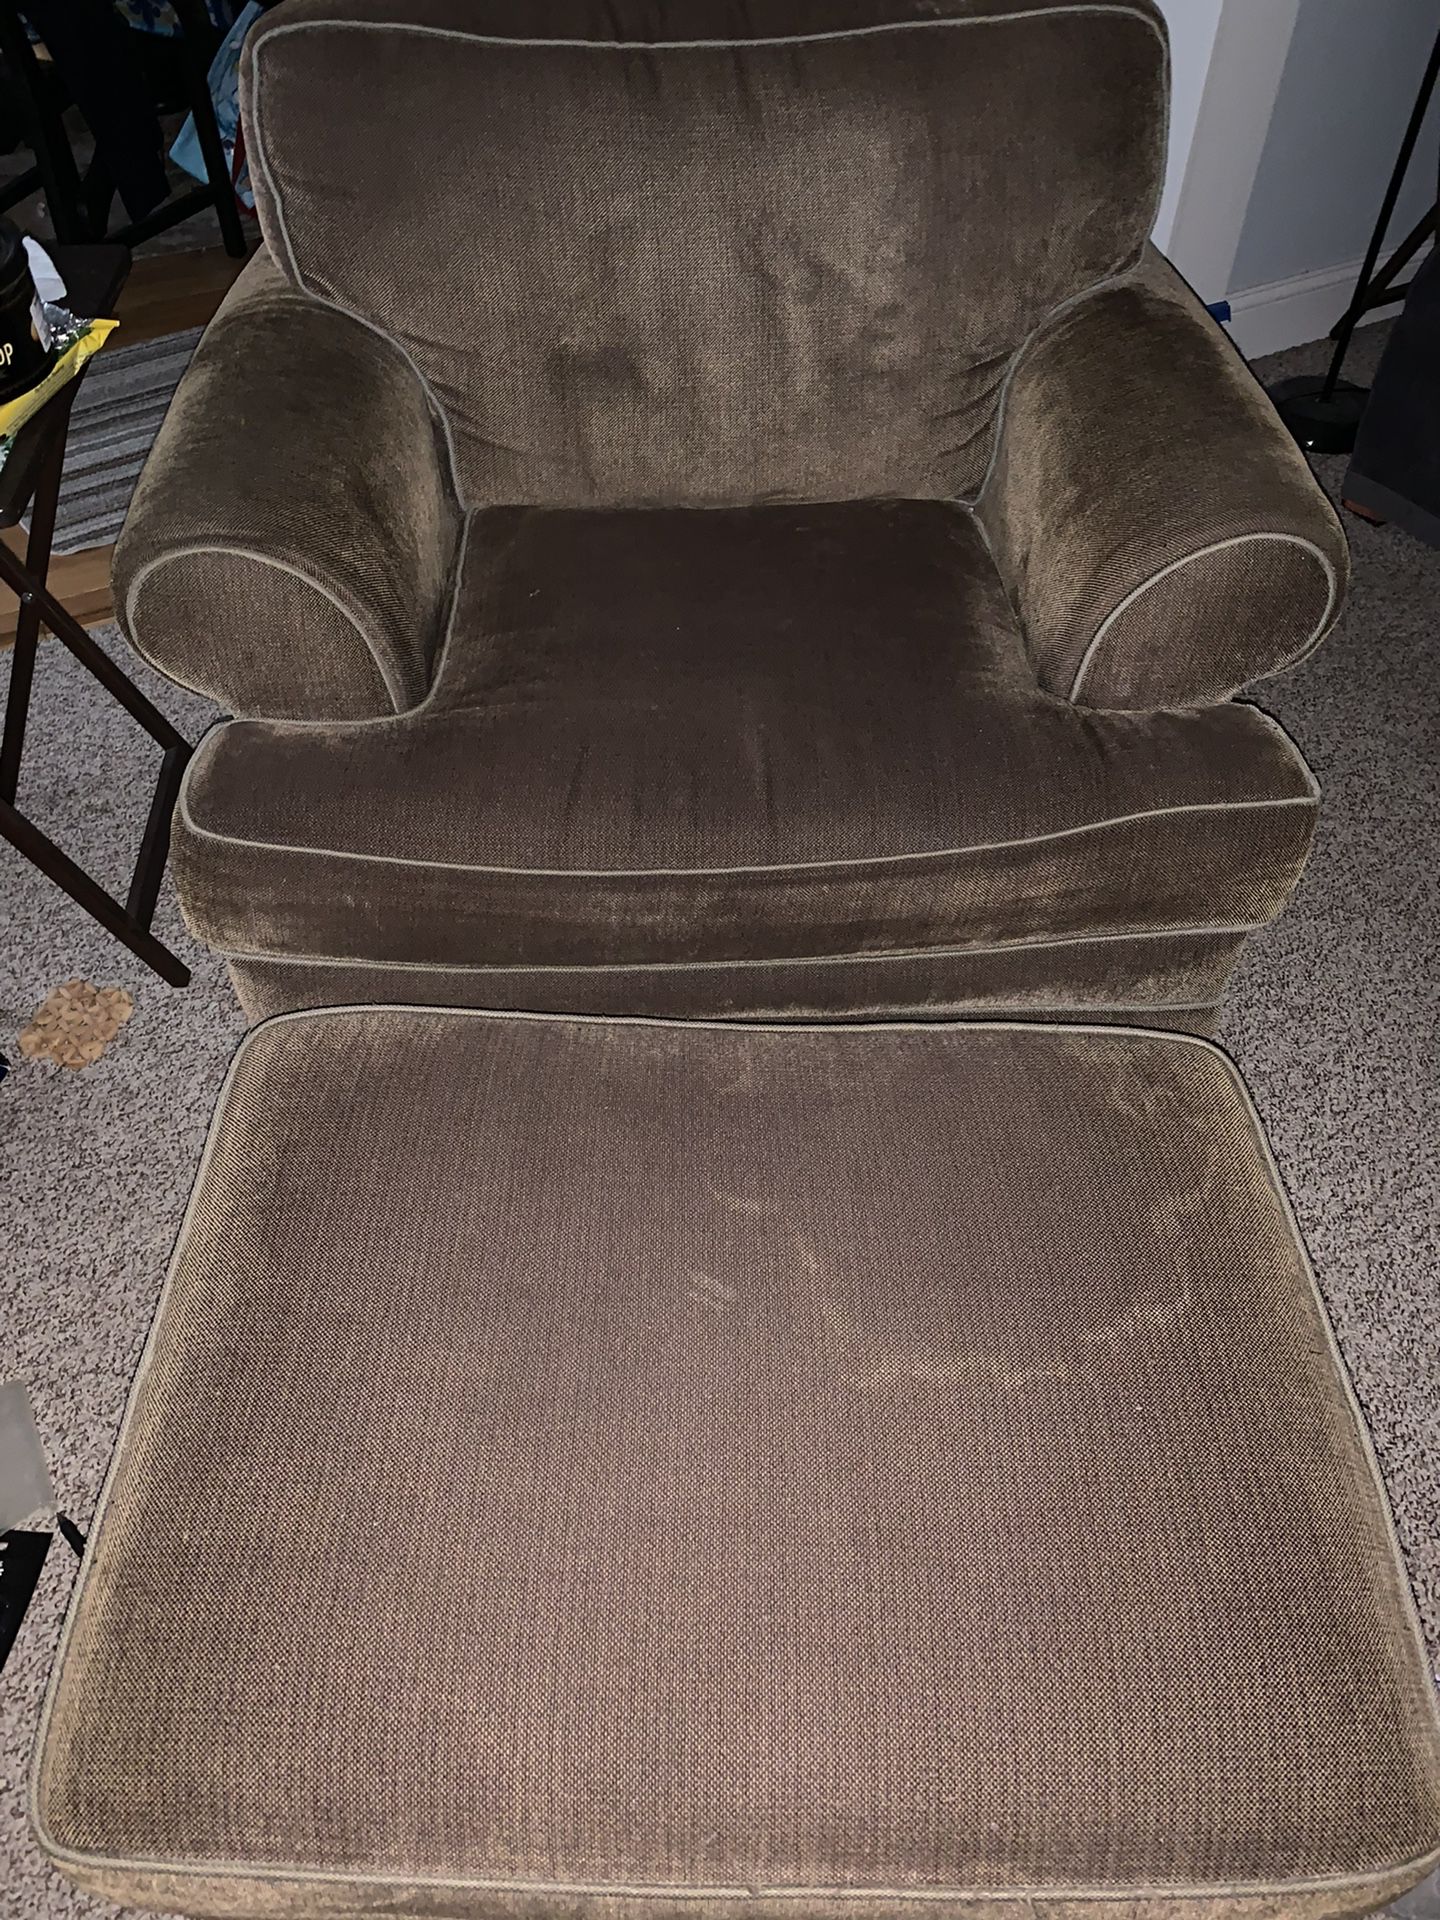 $25 Arm Chair & Ottoman